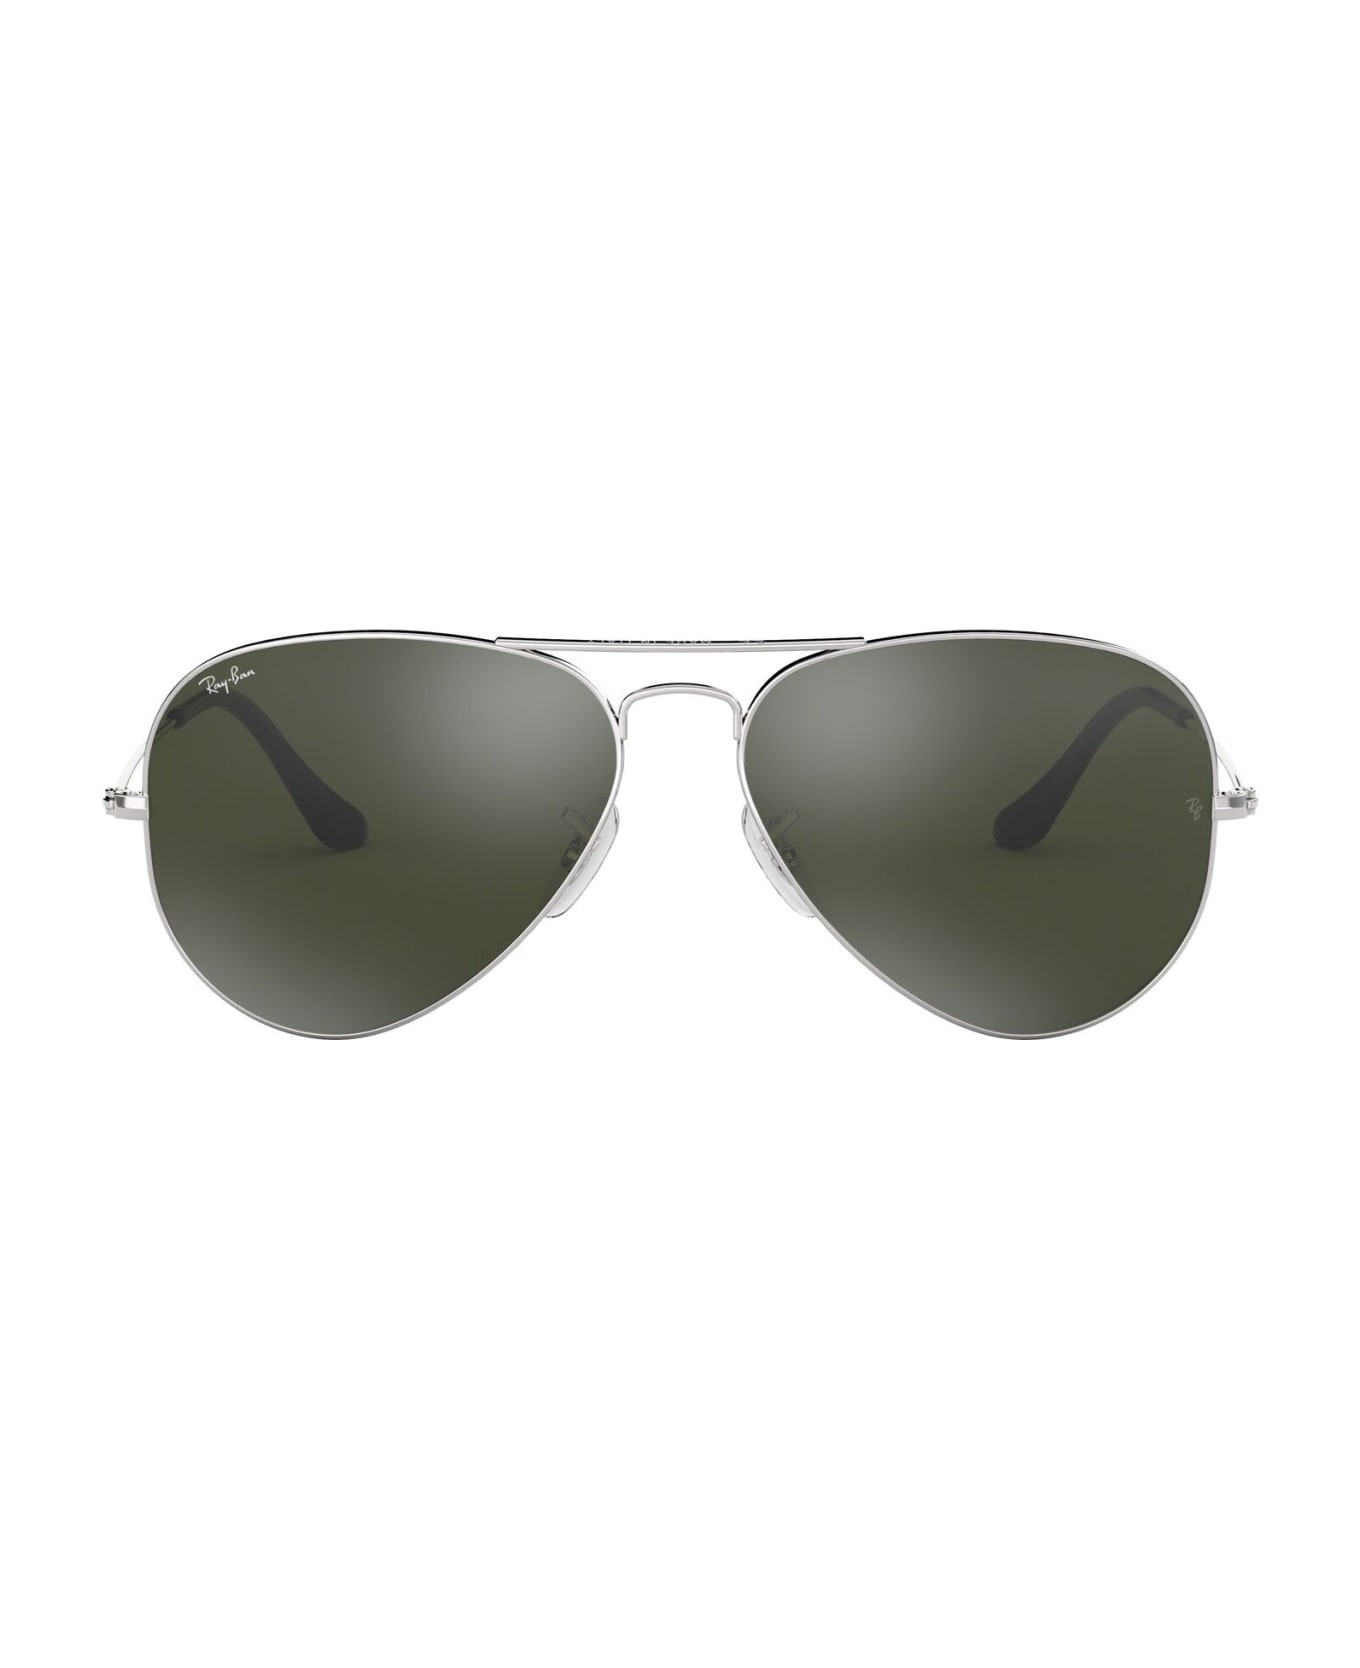 Ray-Ban Sunglasses - Silver/Specchiato silver